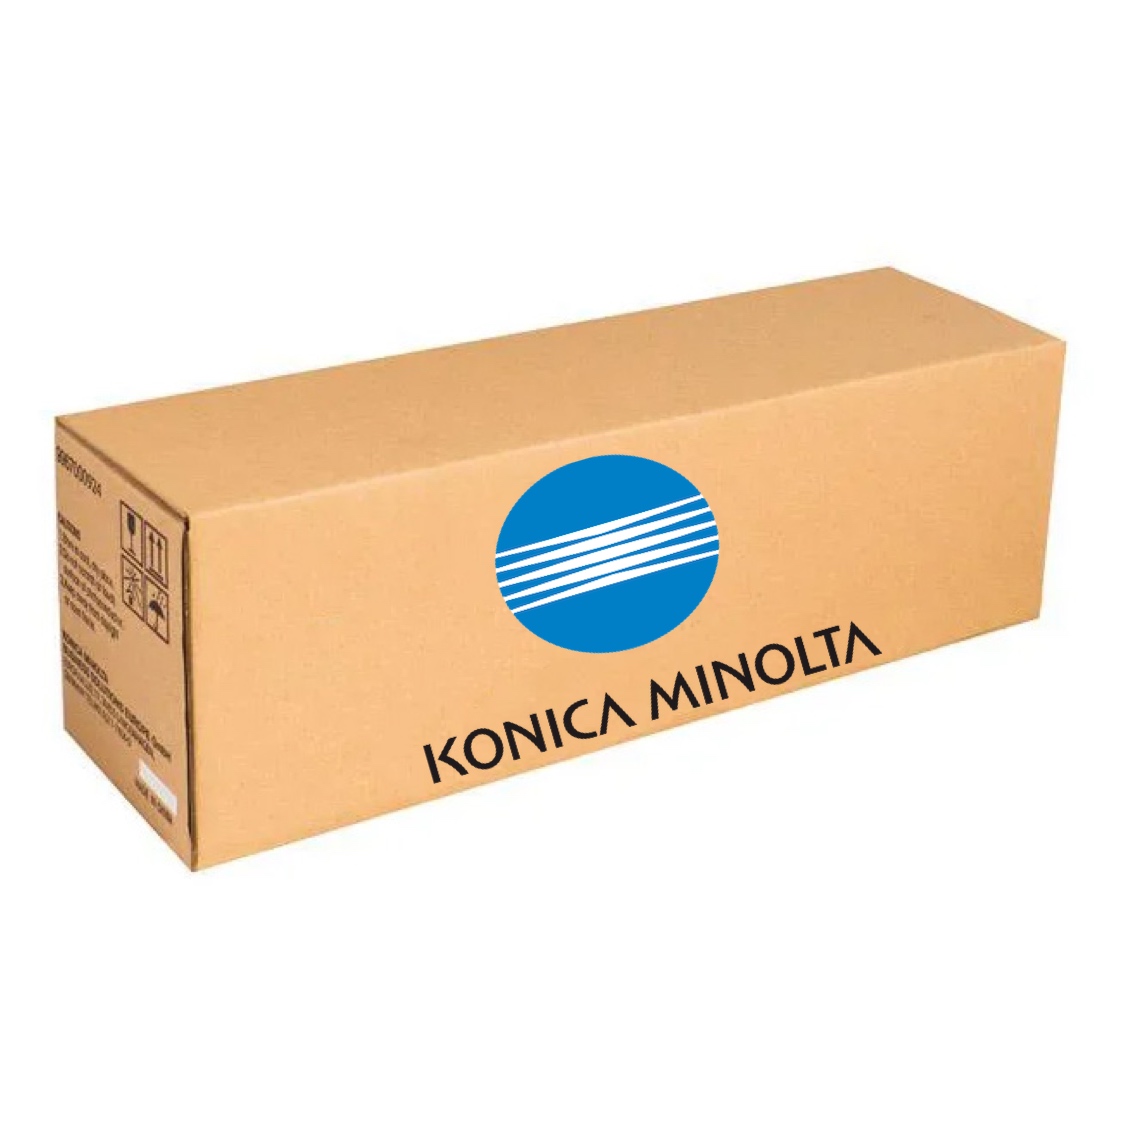 Вал переноса изображения (корот.) в сборе Konica Minolta 4034R70600